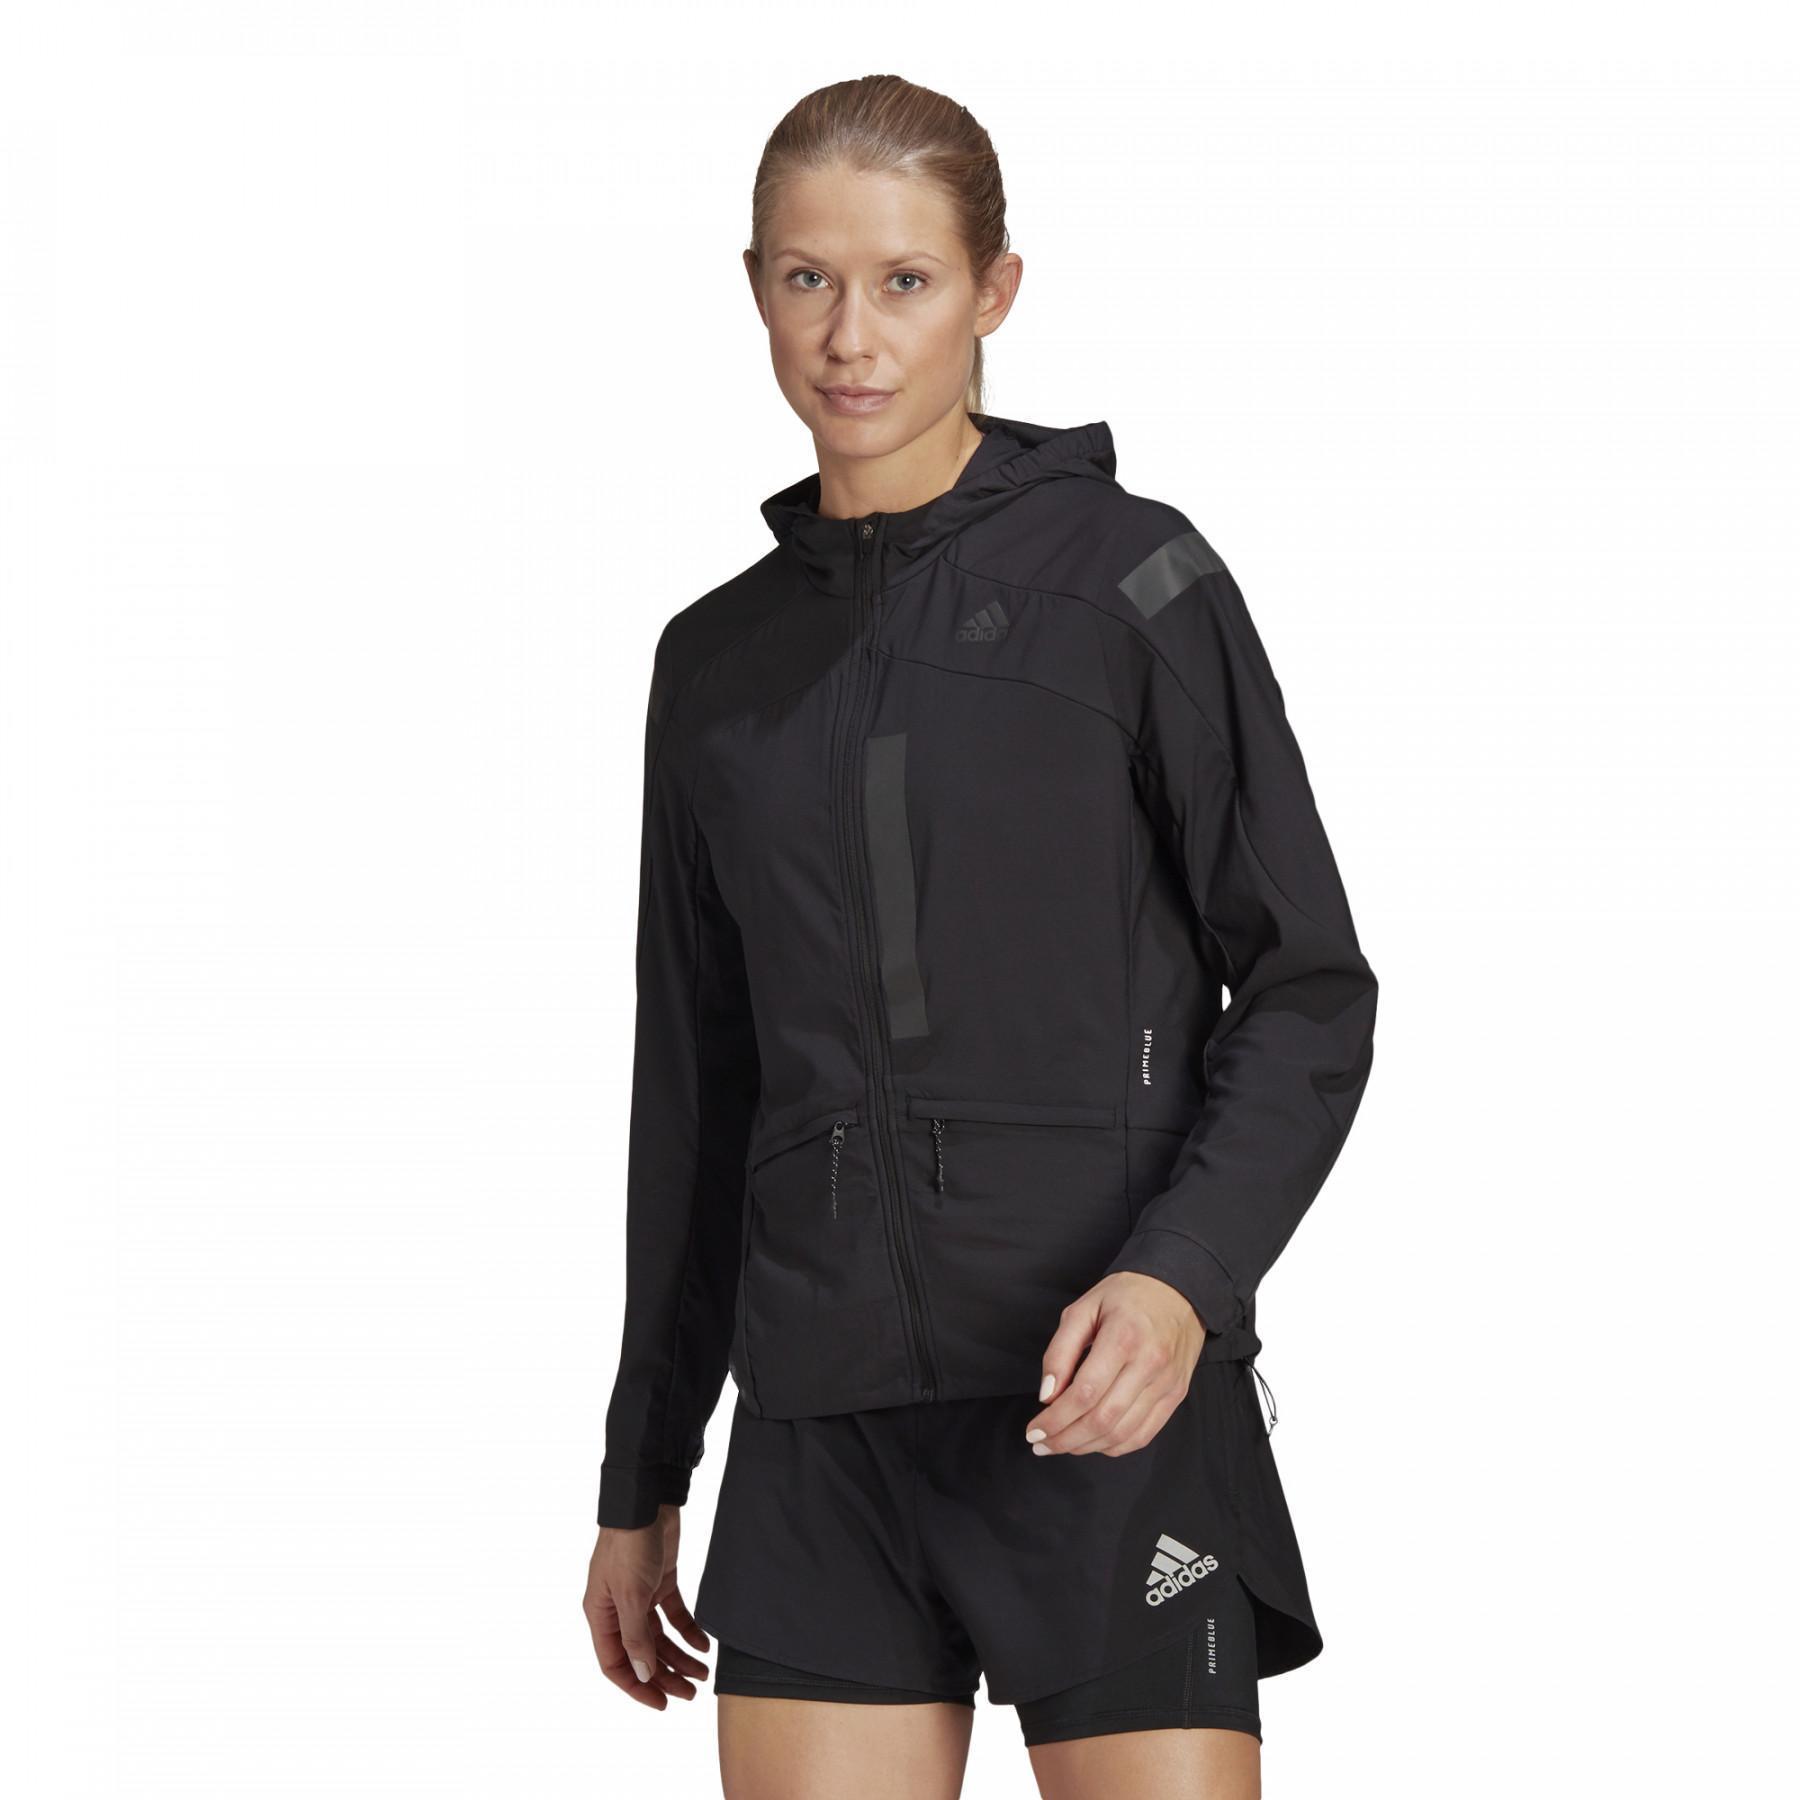 Jaqueta de mulher adidas Marathon